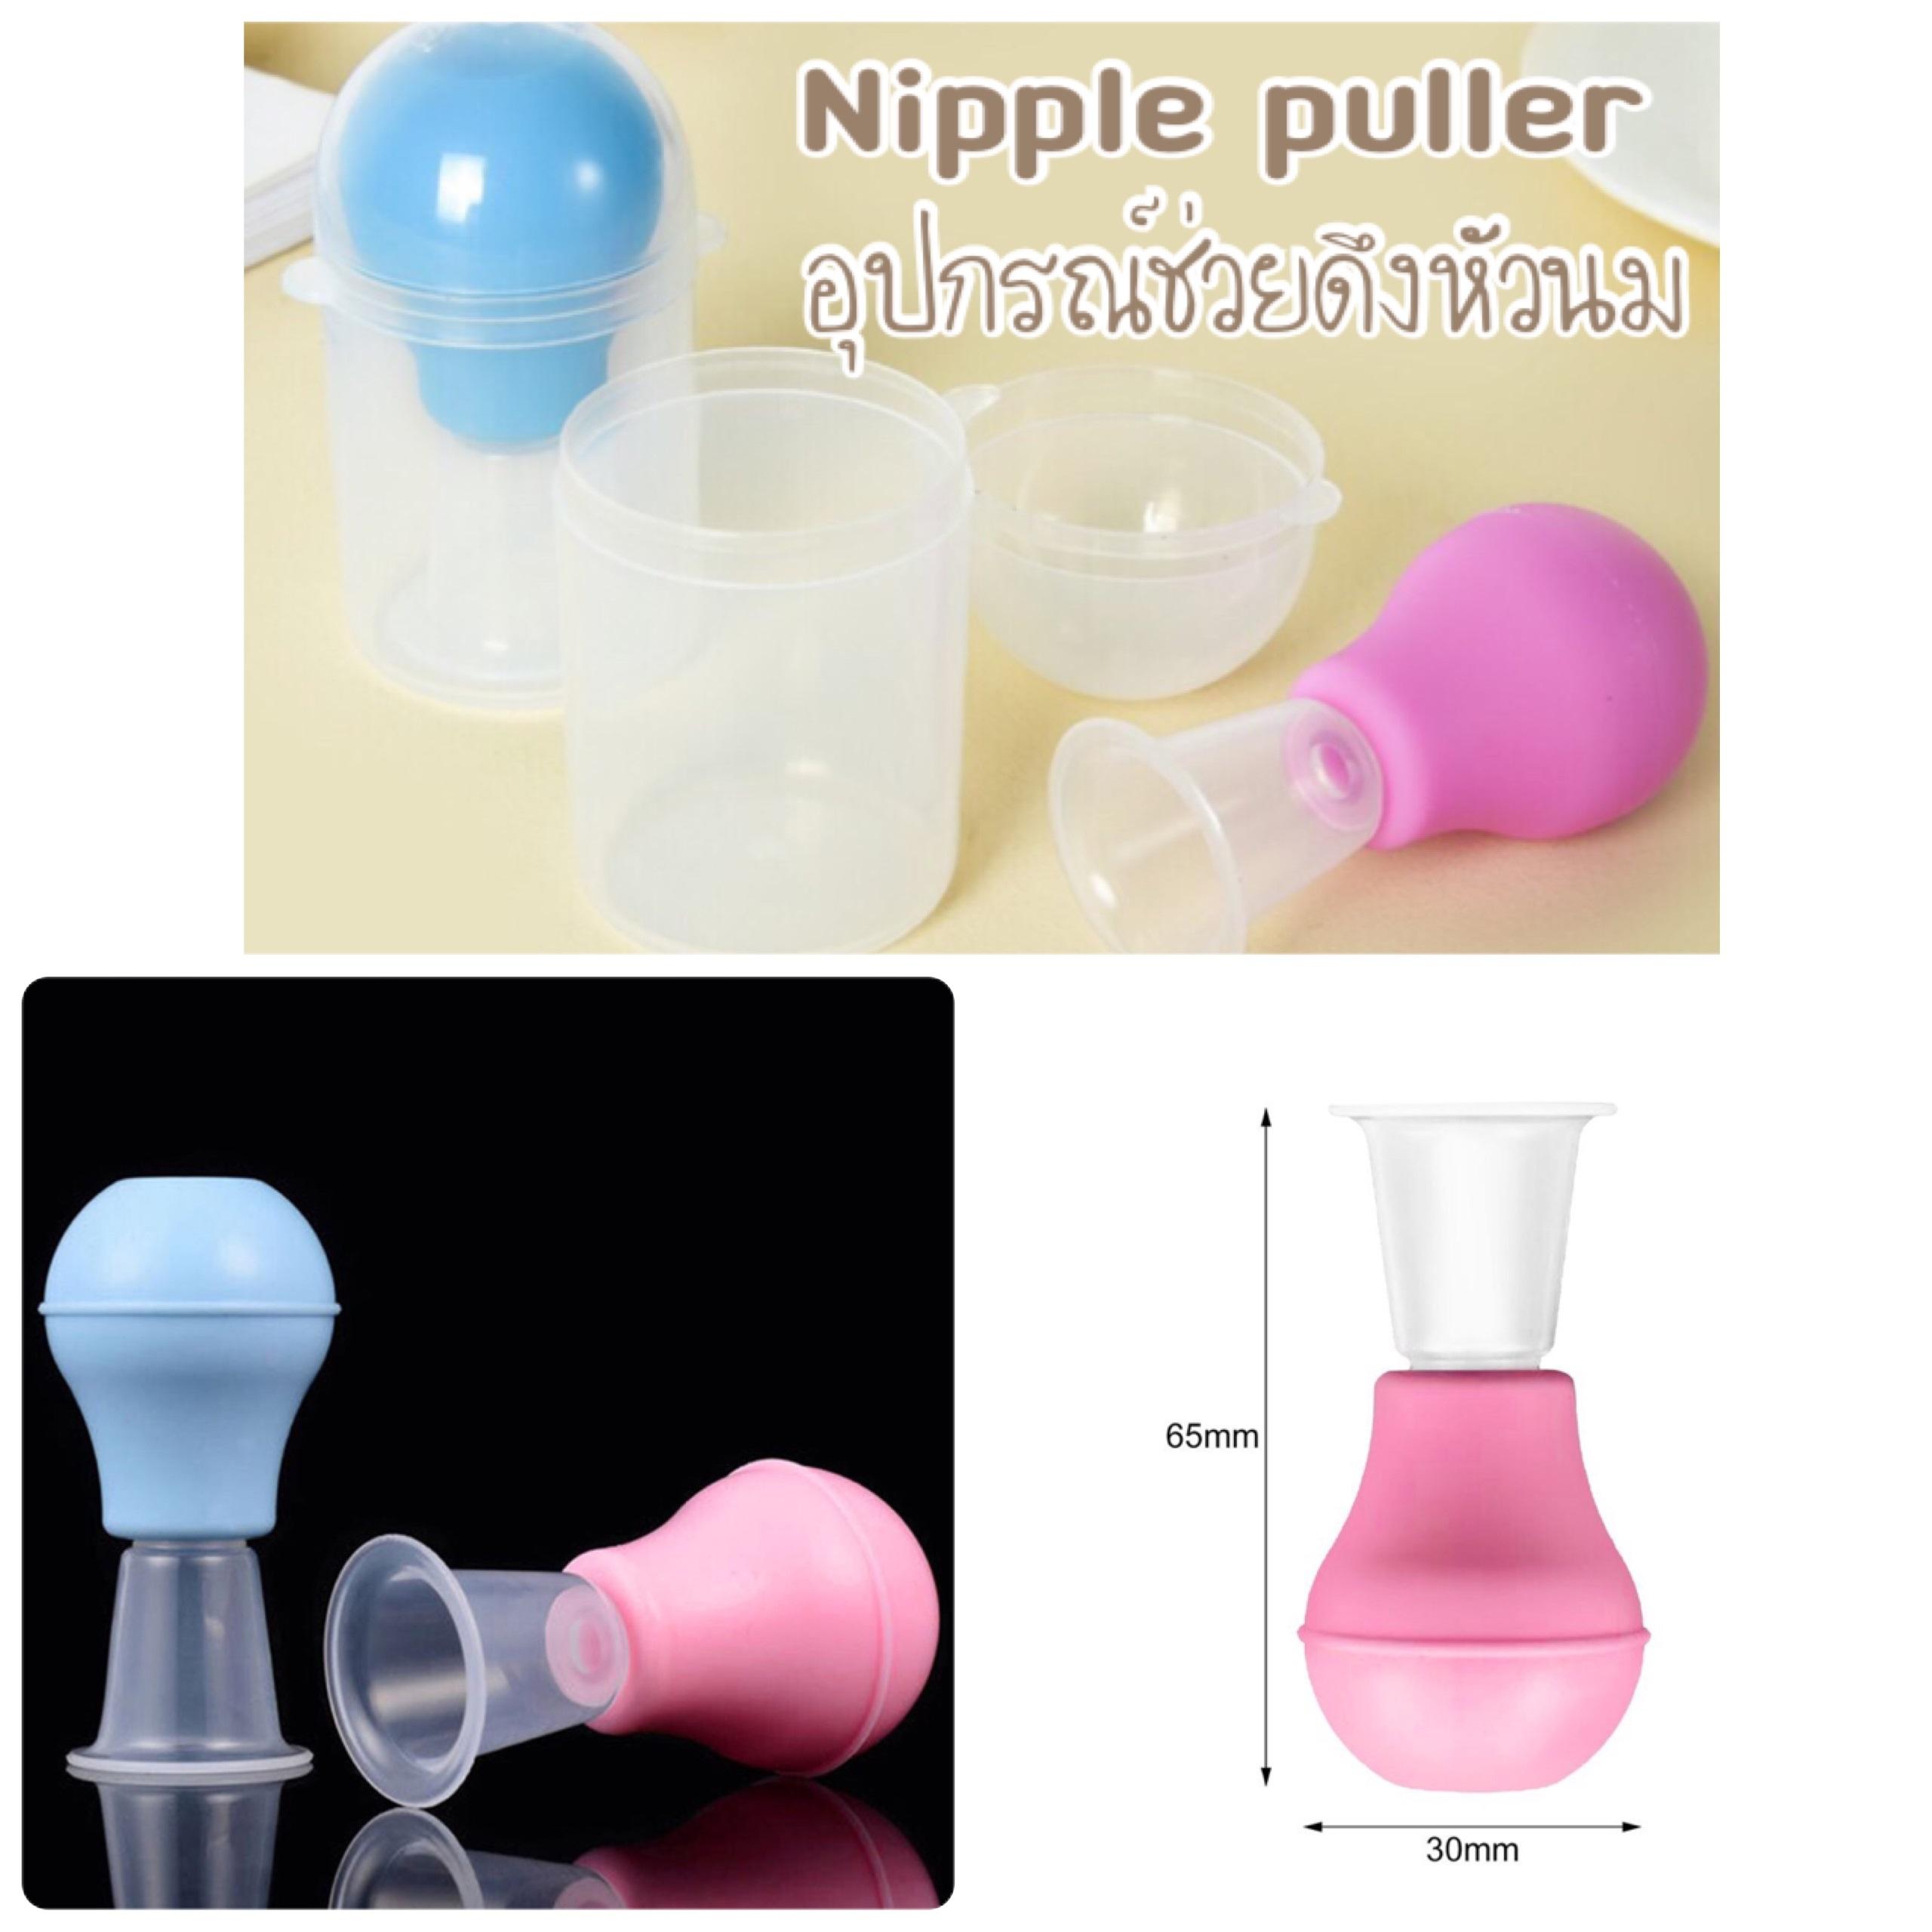 Nipple puller อุปกรณ์ช่วยแก้ปัญหา หัวนมบอด หัวนมสั้น จุกดูดนม